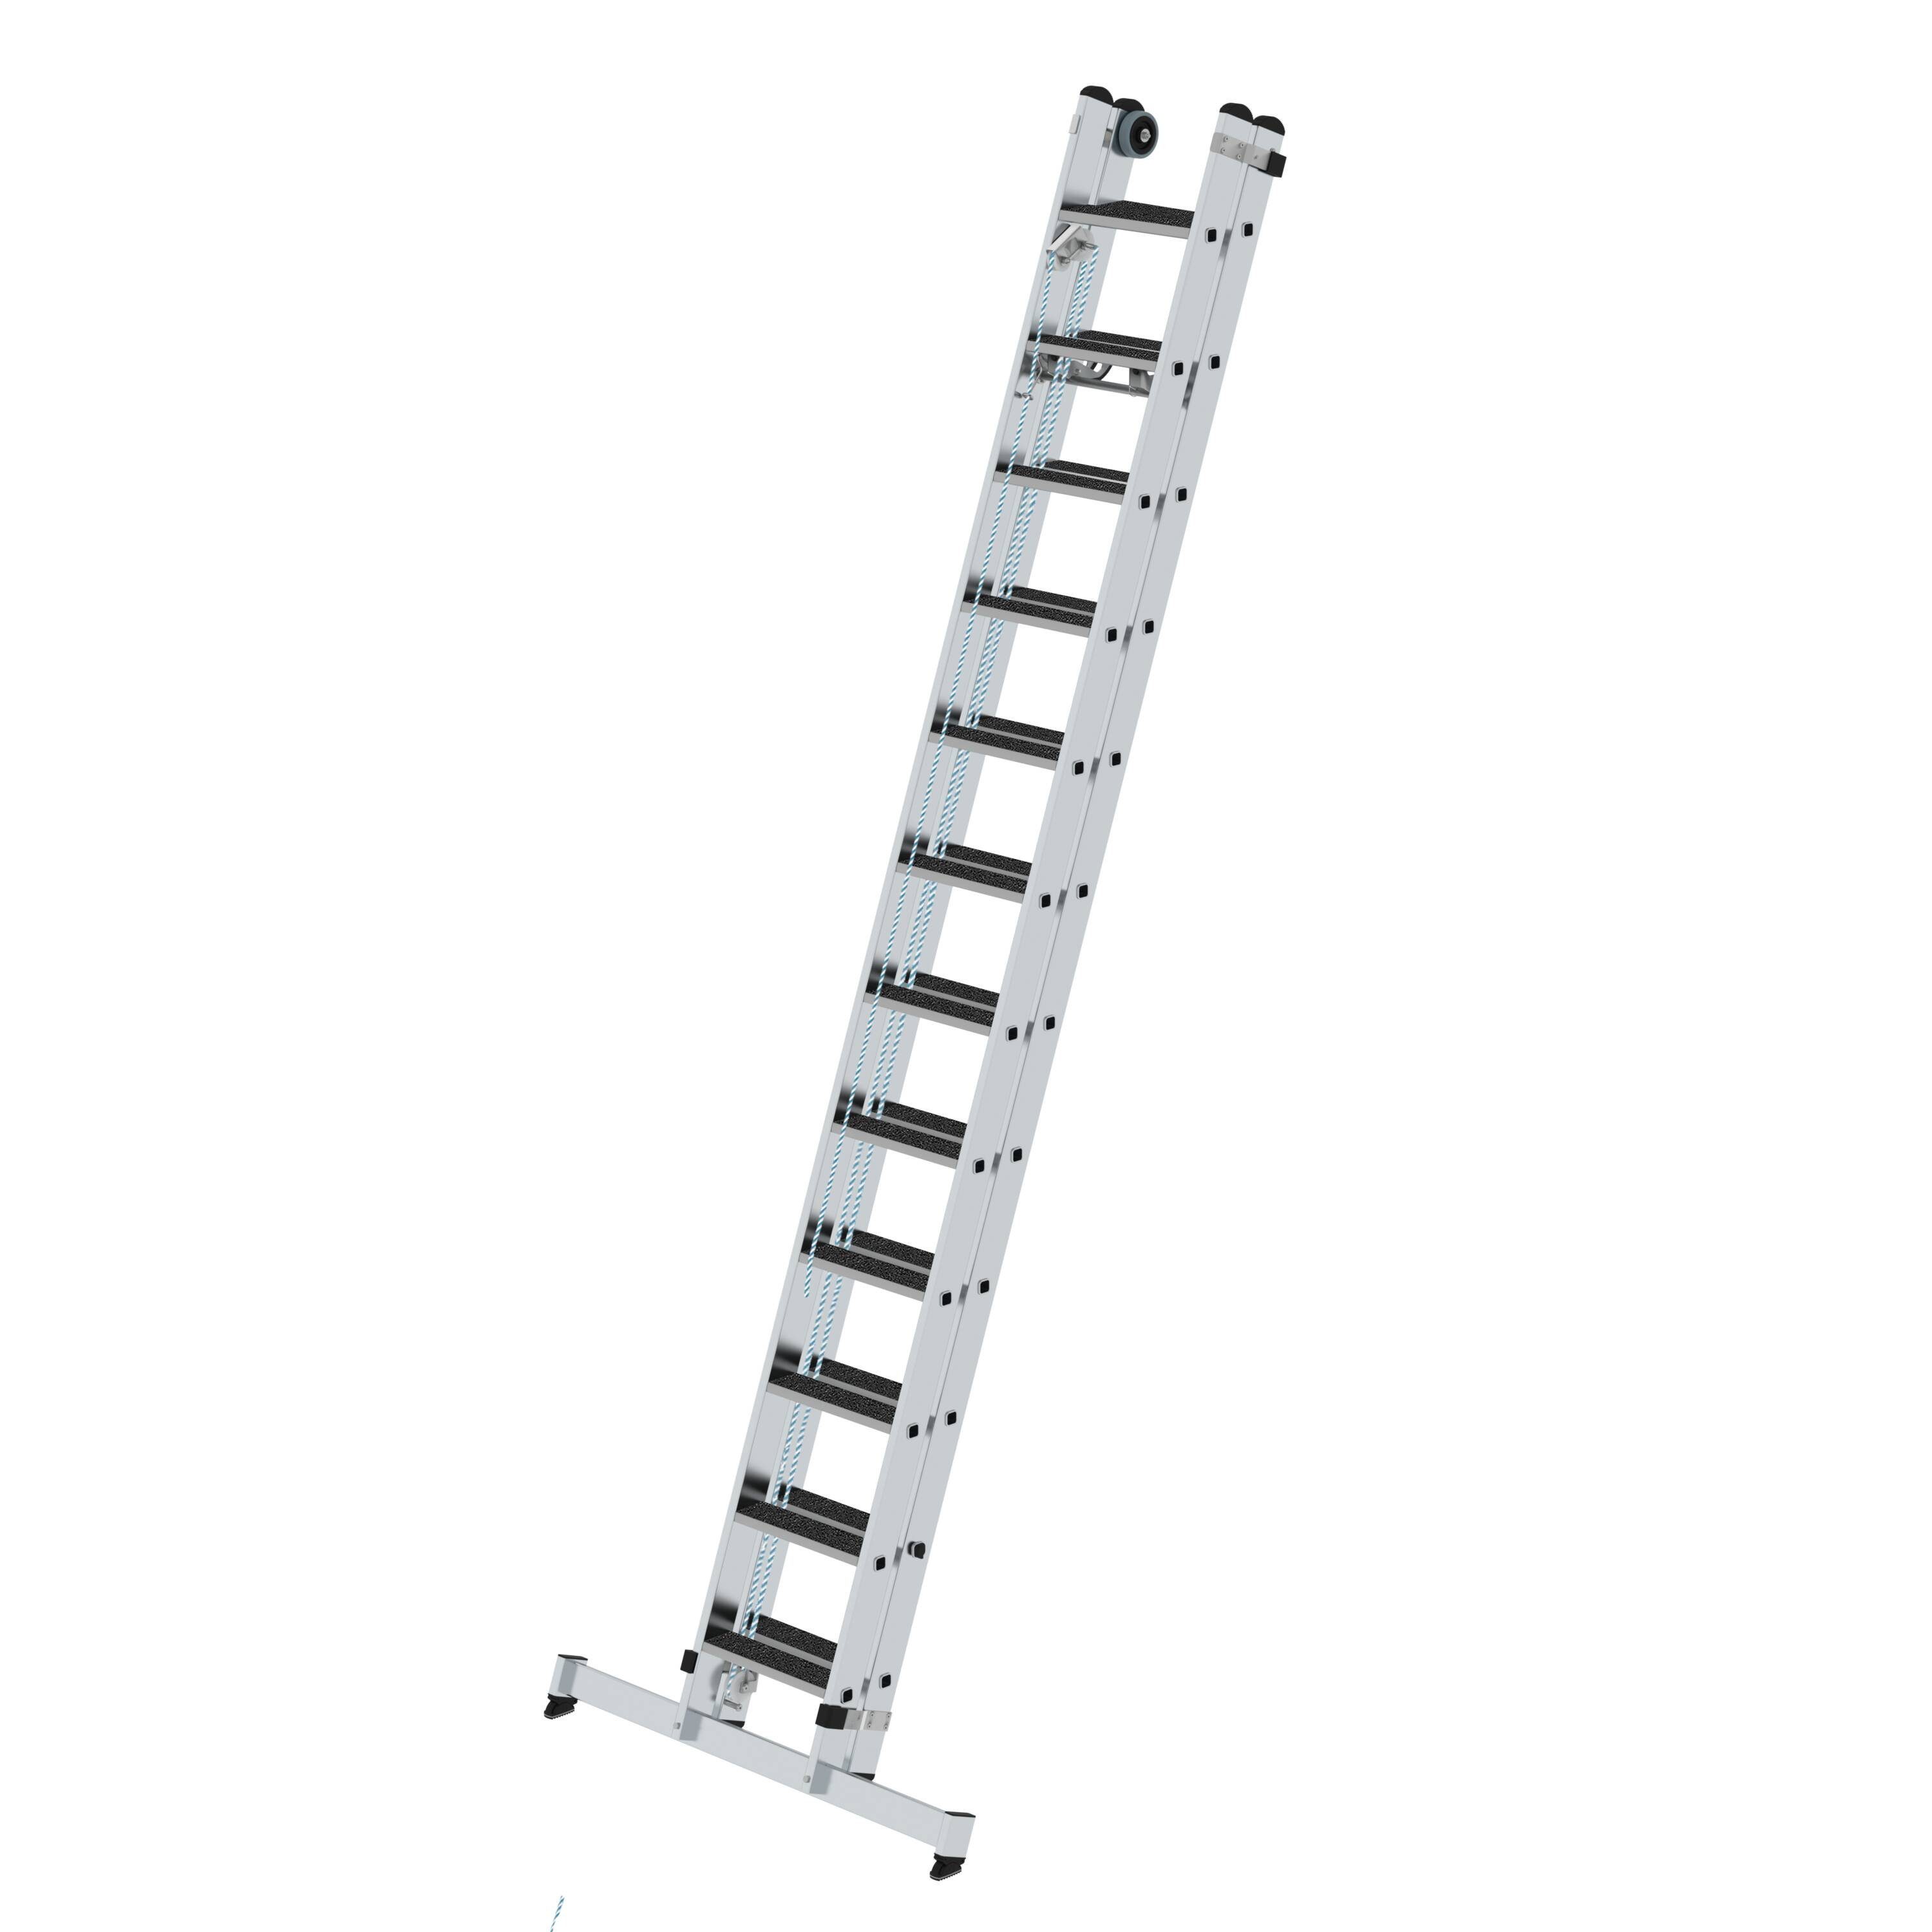 PROREGAL® Schiebeleiter Stufen-Seilzugleiter und mit Traverse nivello® clip-step 2-teilig R13